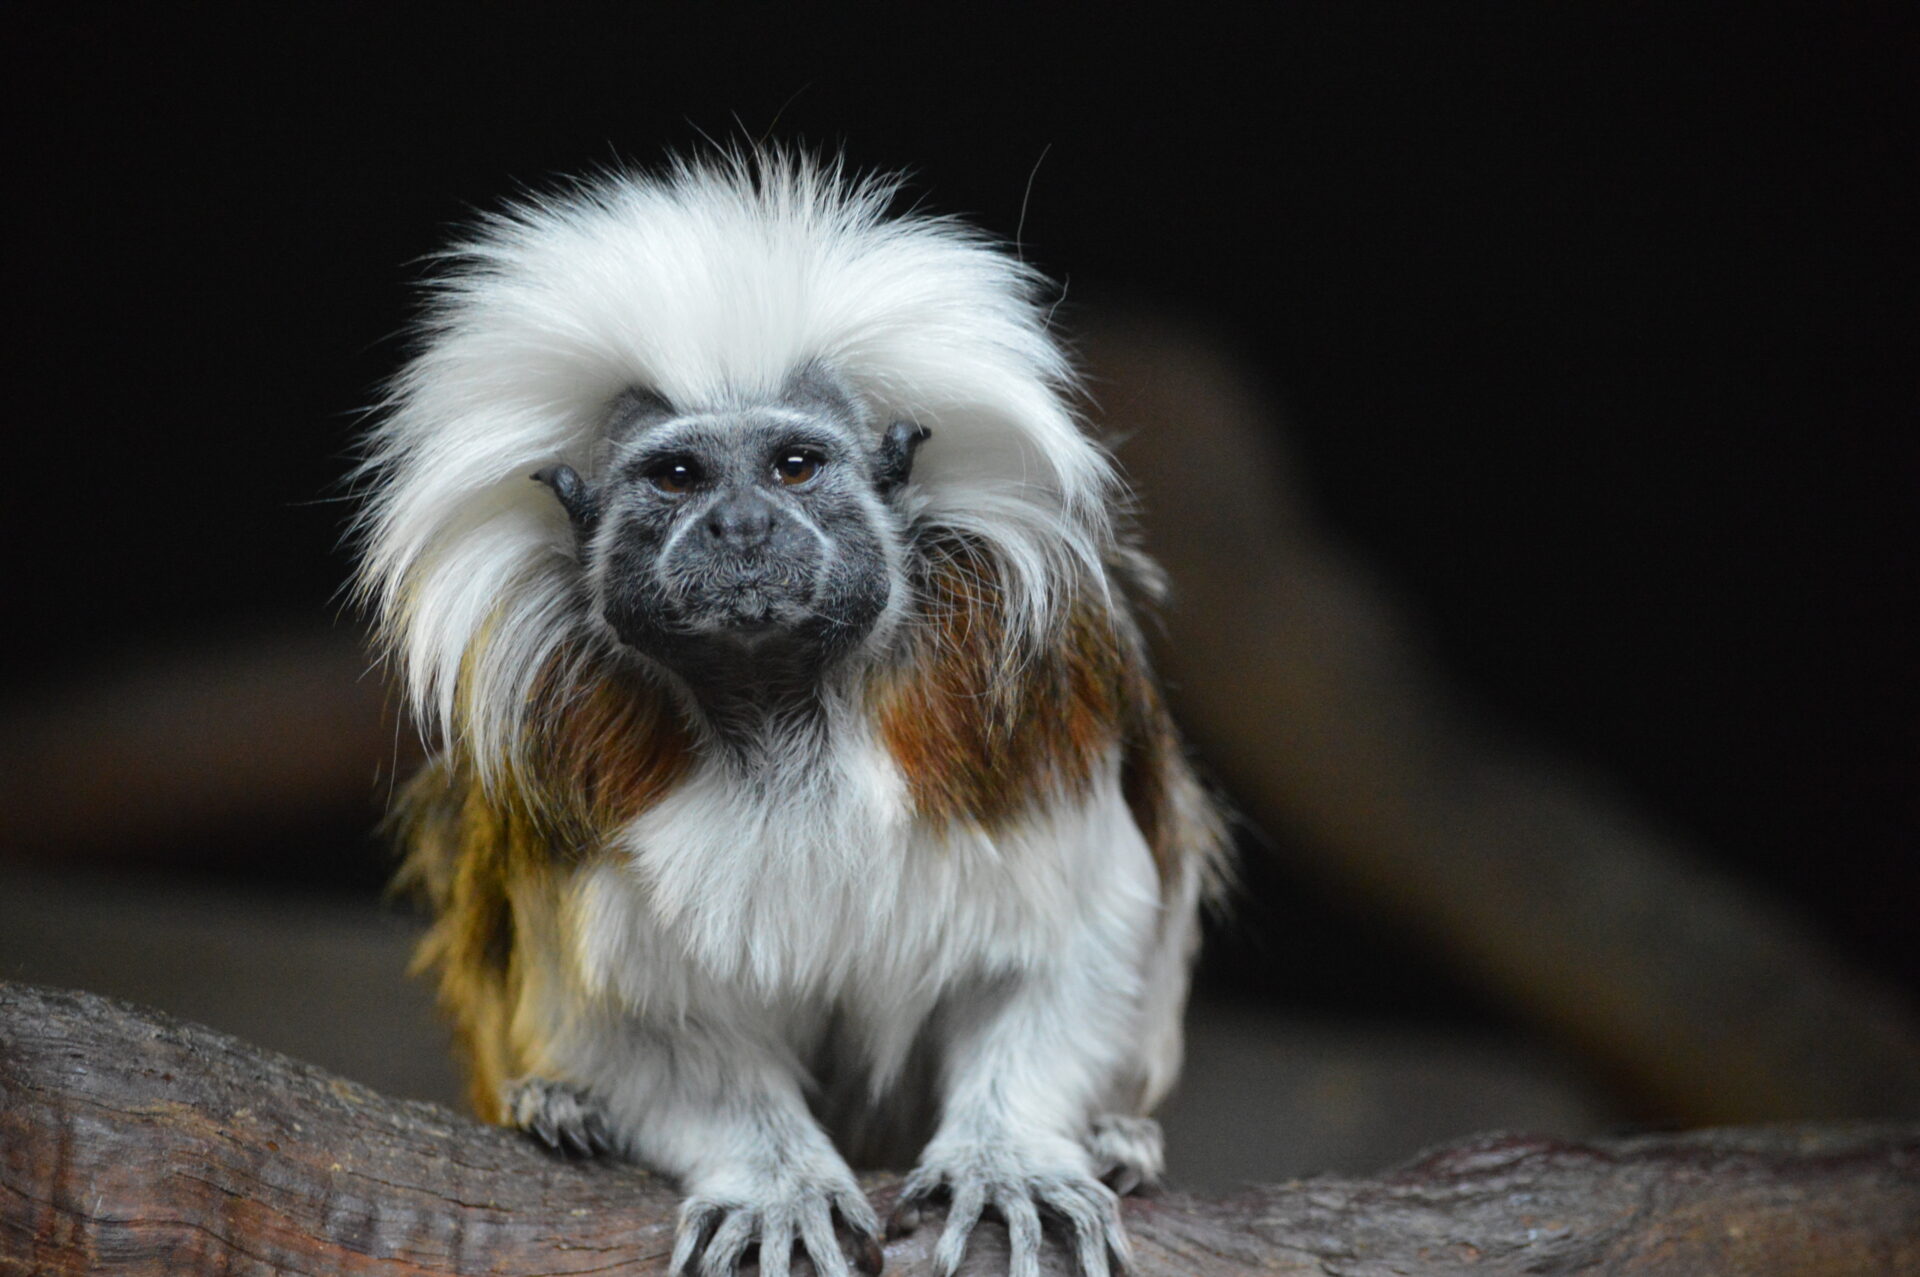 Tamarin Monkeys - Facts, Information & Habitat